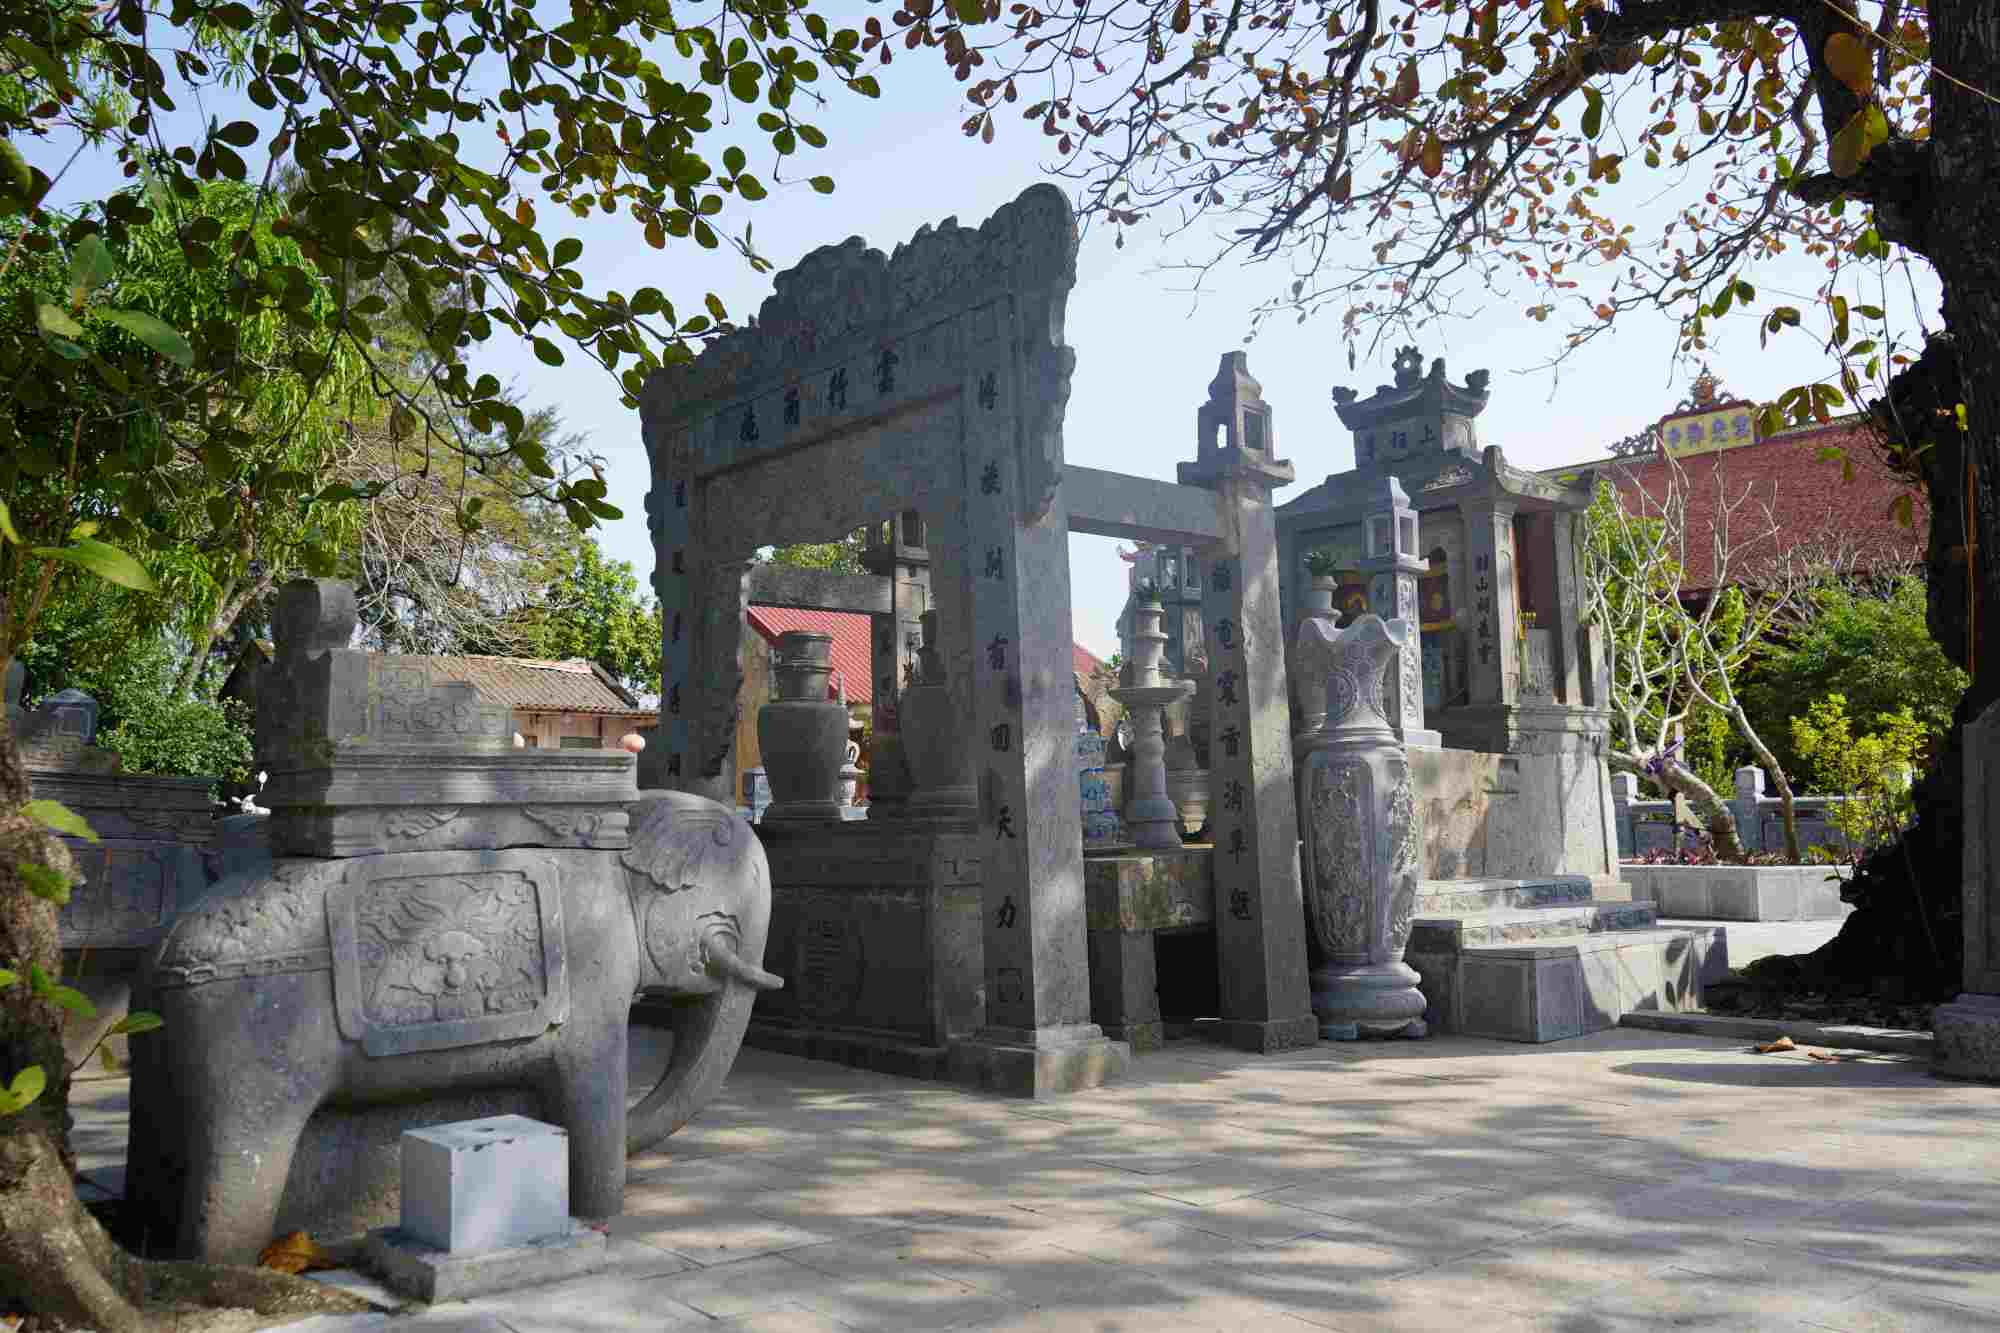 Đền thờ hai vị thành hoàng Kinh Sơn và Trí Minh. Cả hai vị đều có công đánh giặc, mở mang làng xóm, được thờ bằng long ngai, bài vị.